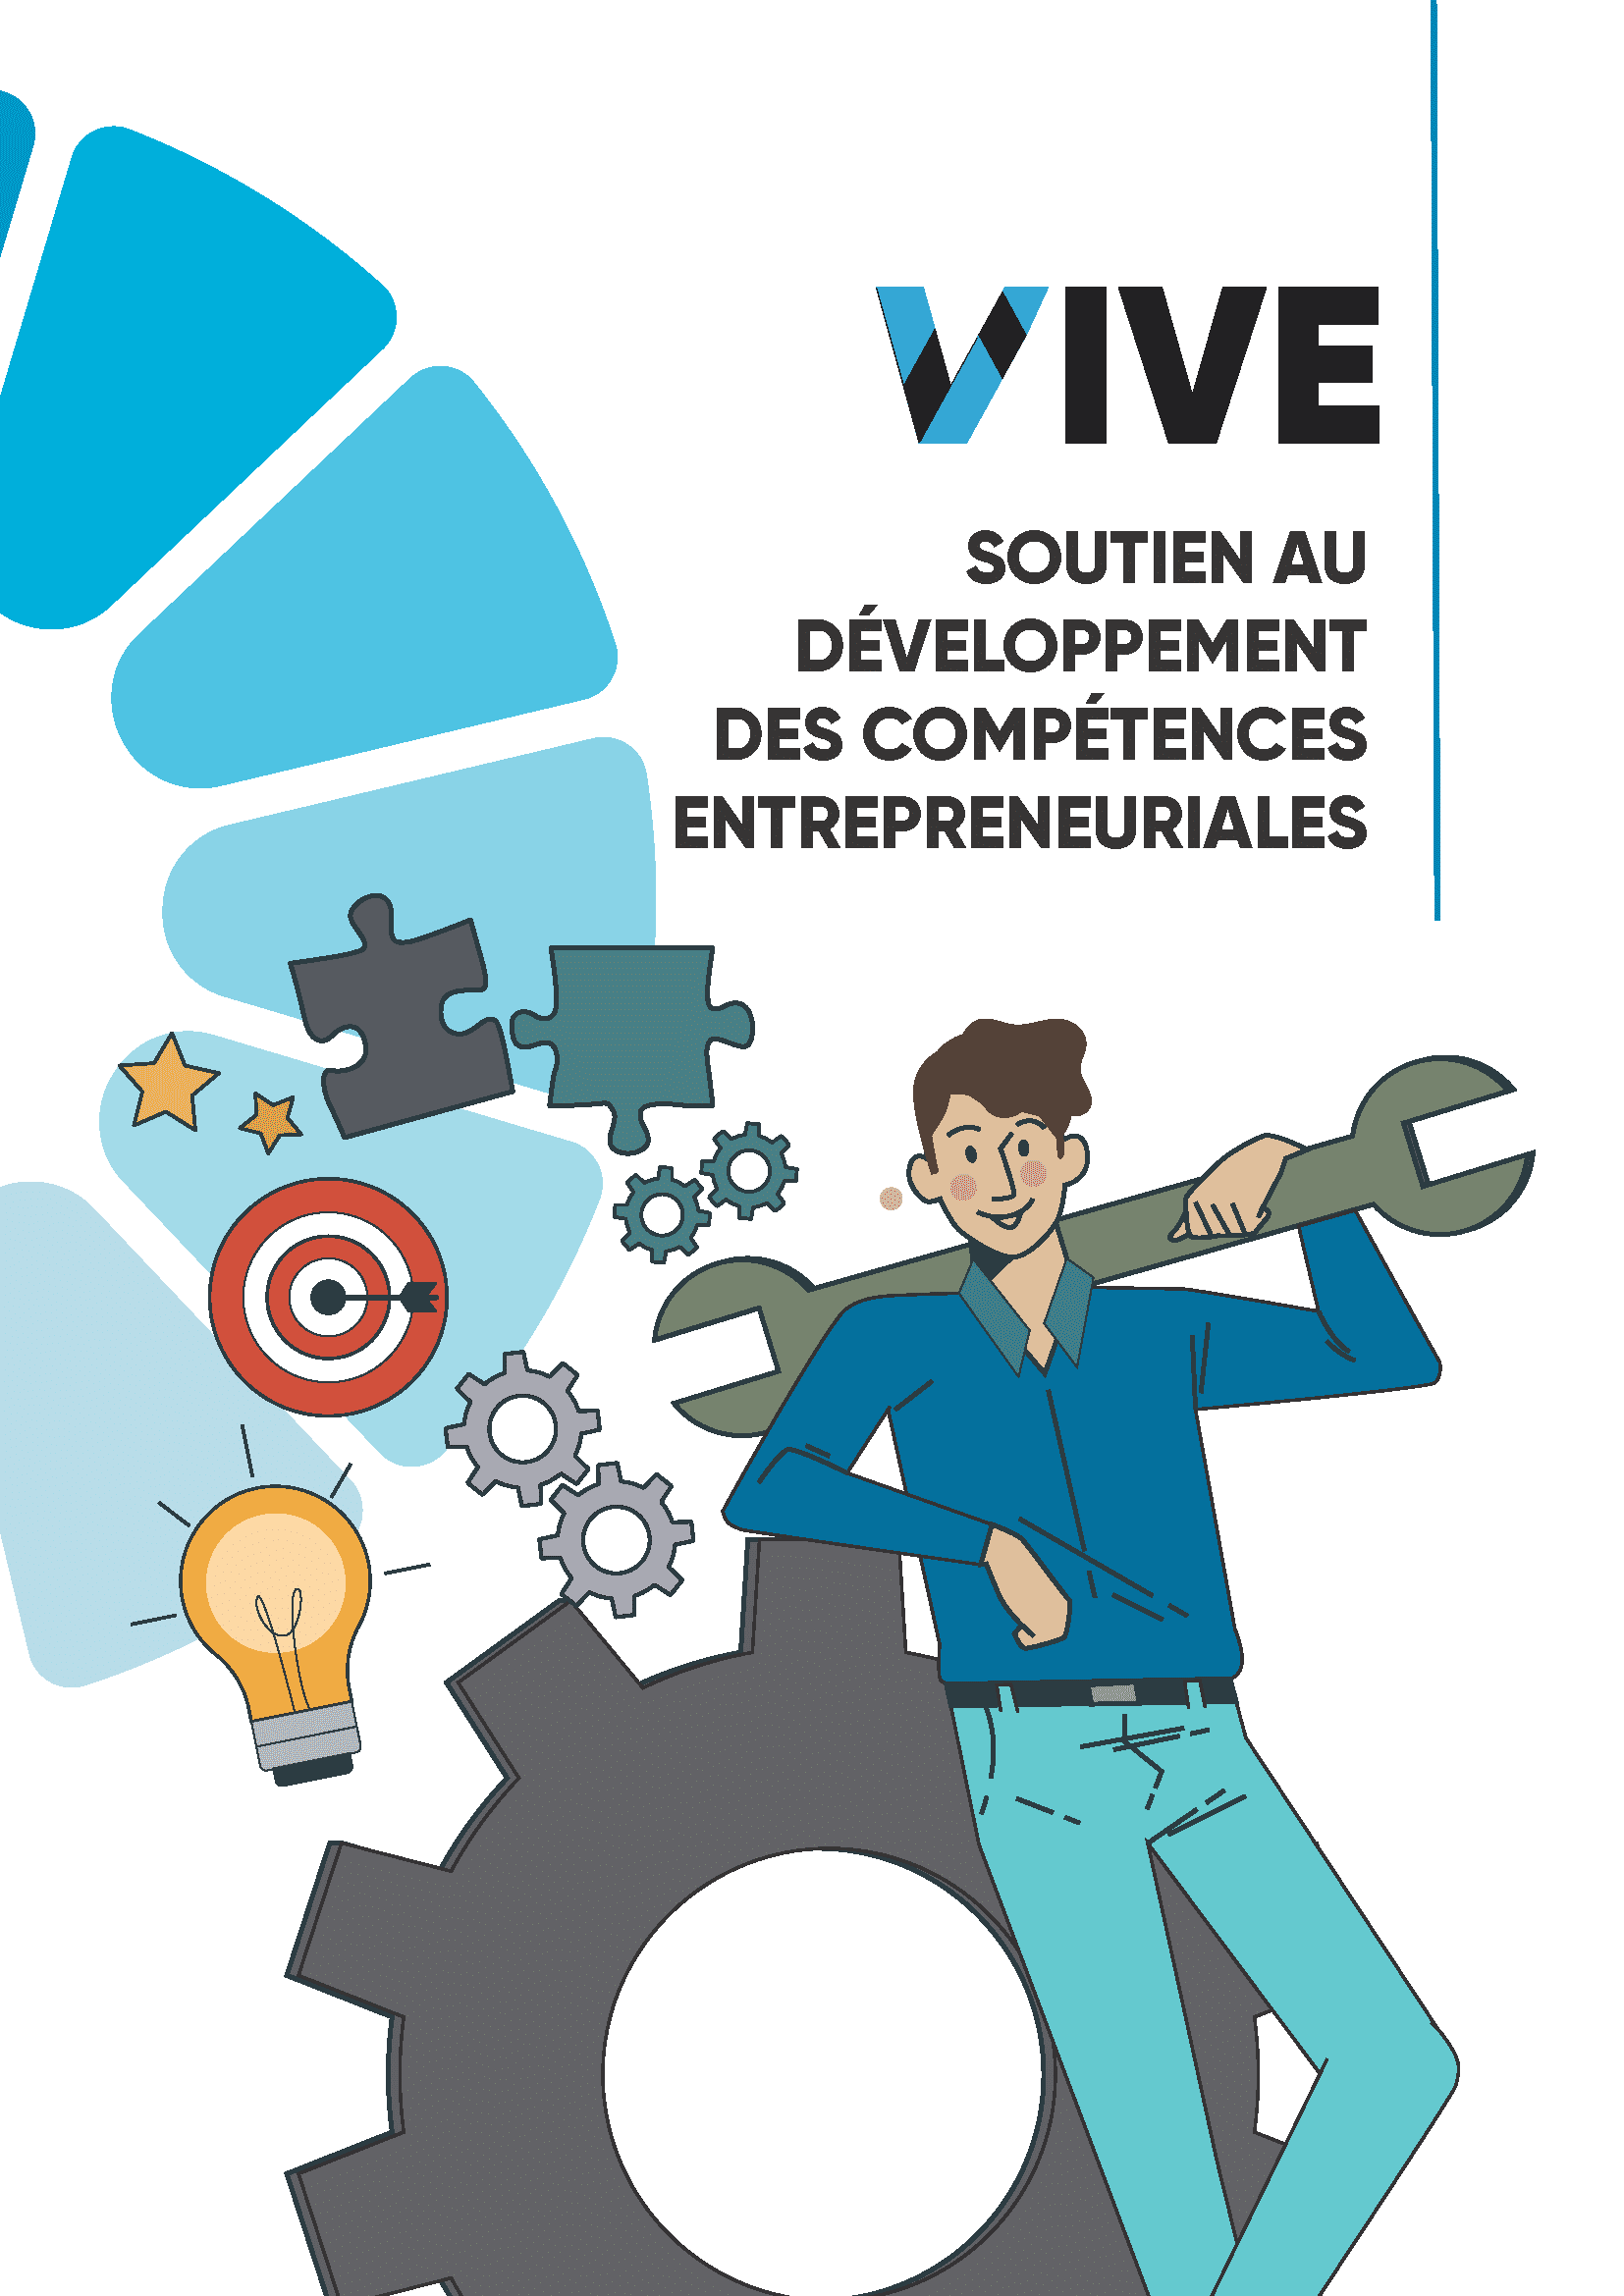 Soutien au développement des compétences entrepreneuriales